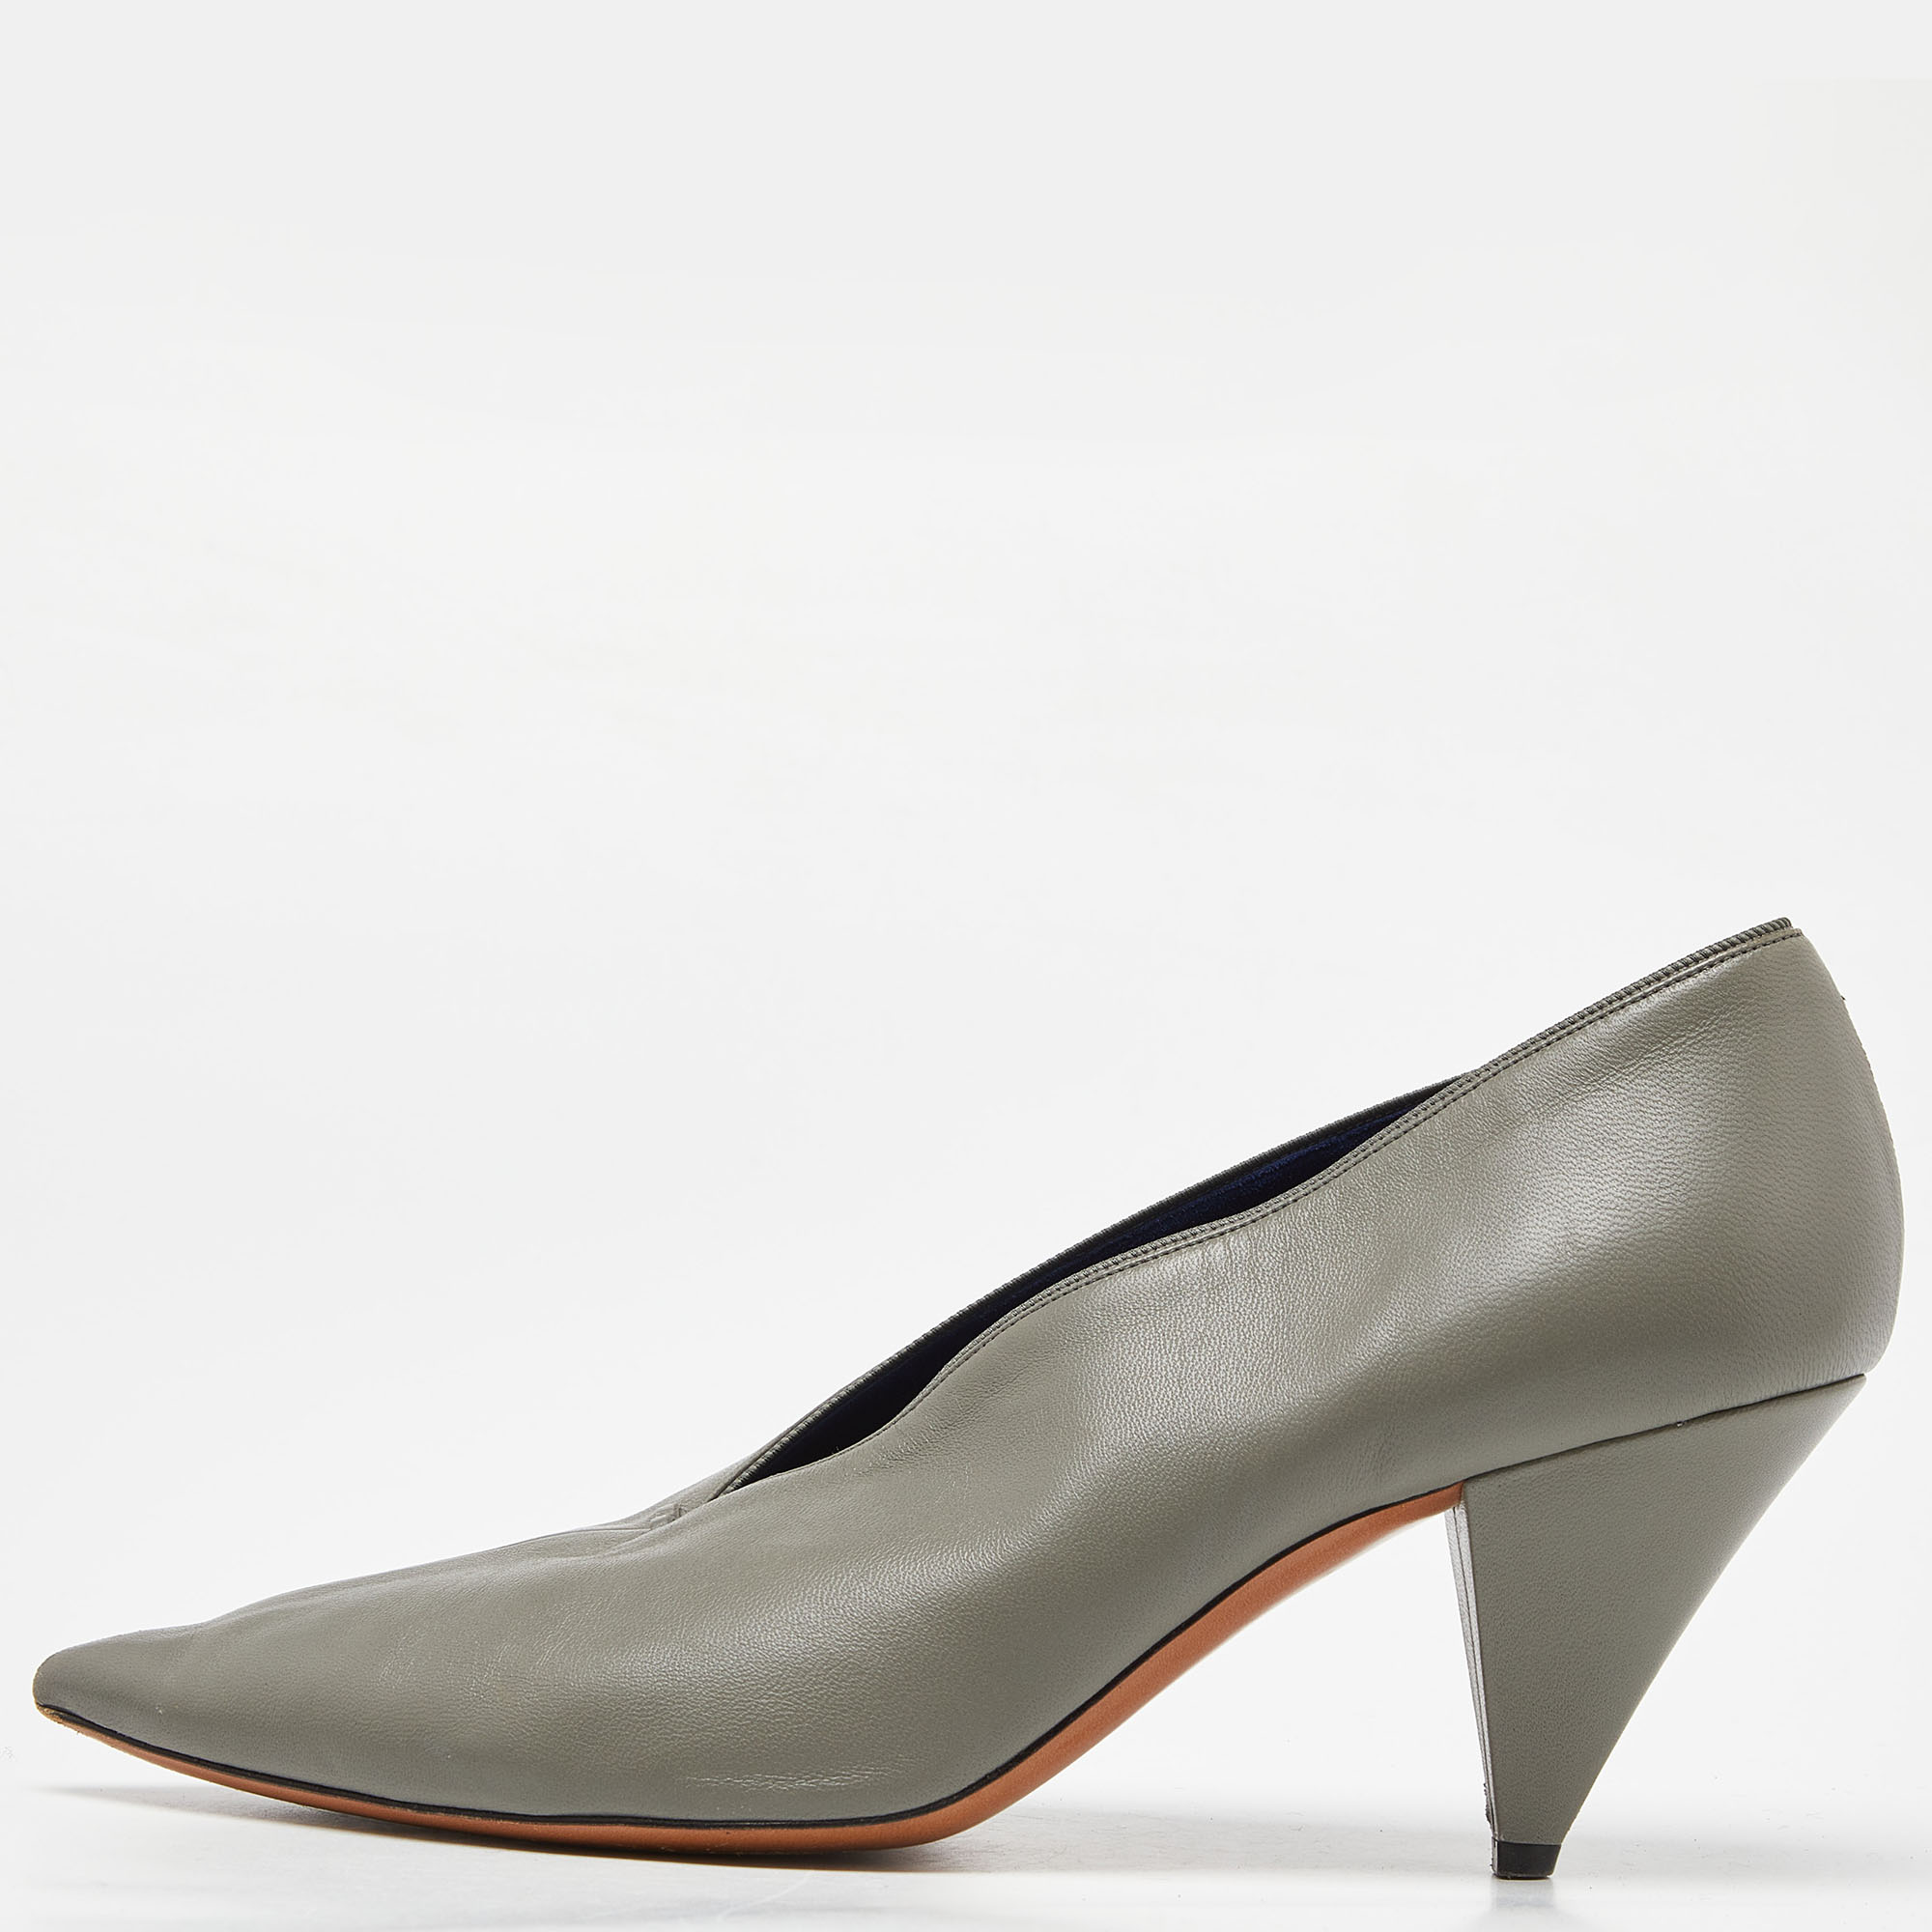 Celine grey leather v neck pointed toe pumps size 38.5